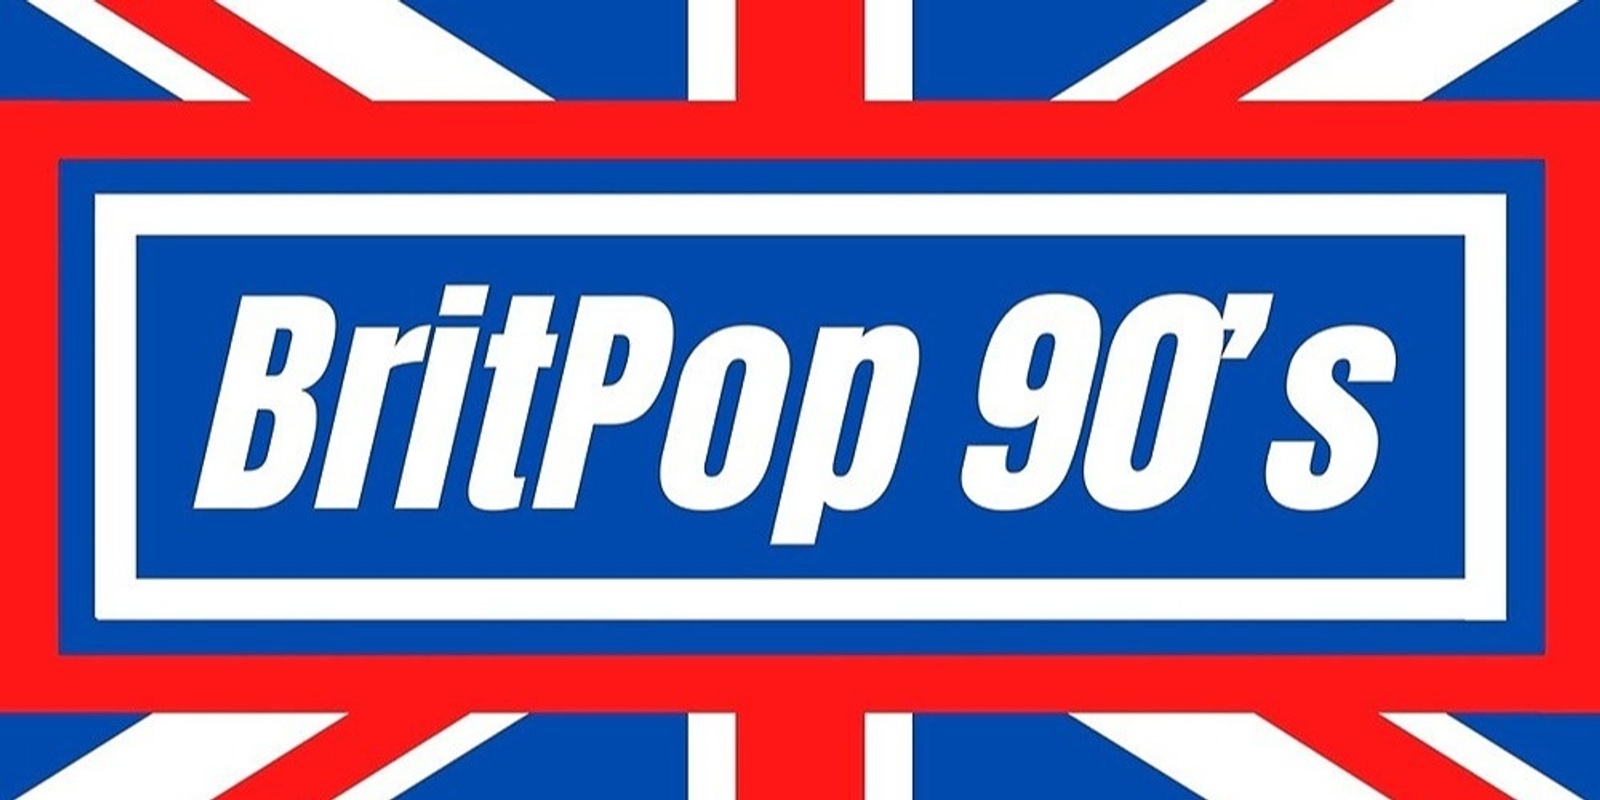 Banner image for Britpop 90's - Mounties